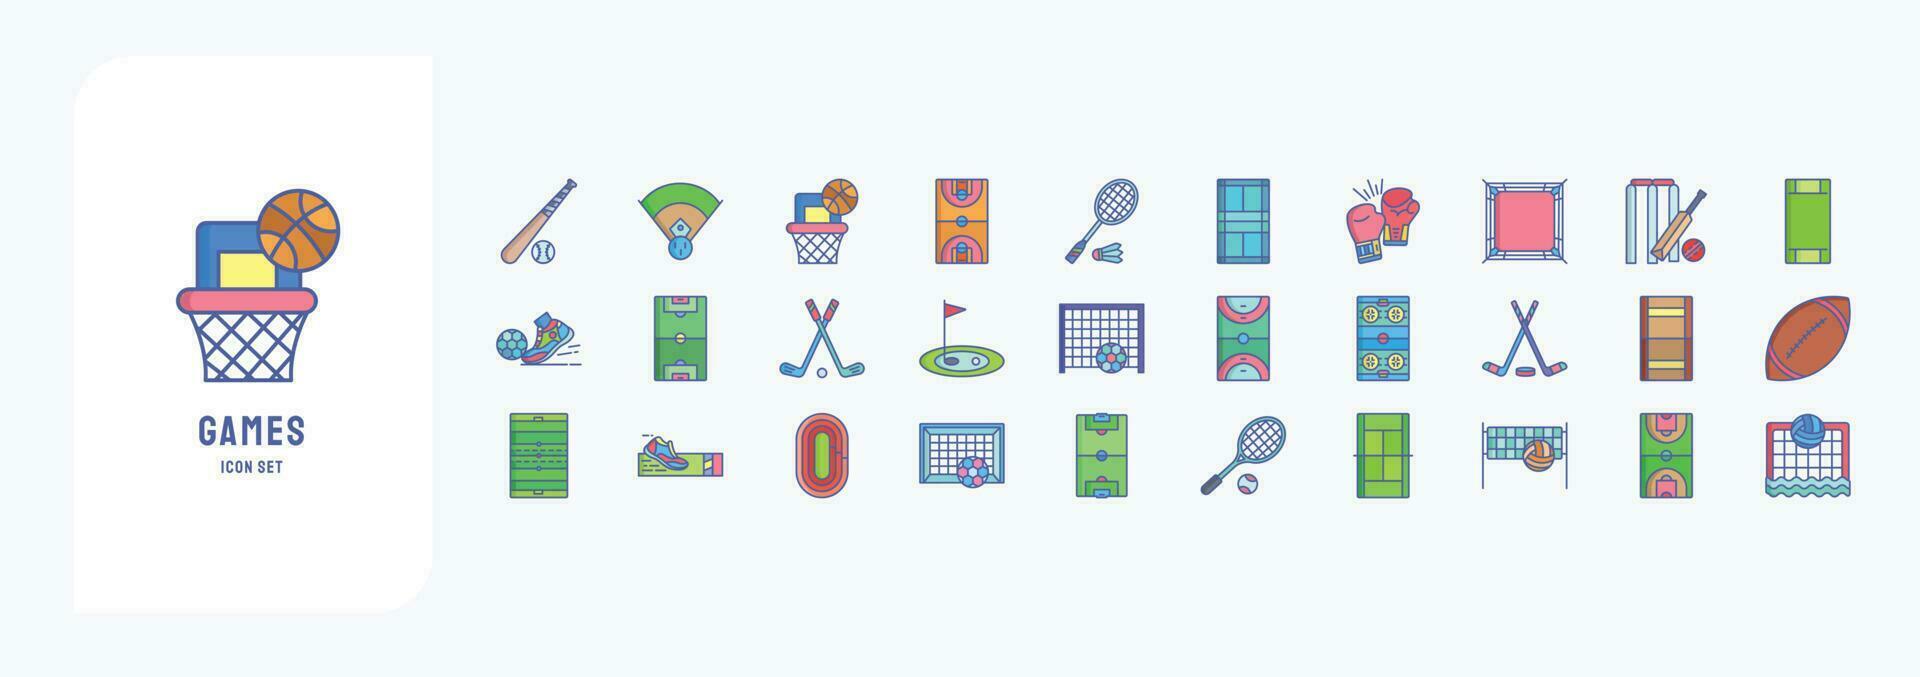 colección de íconos relacionado a estadios y juegos, incluso íconos me gusta béisbol juego, baloncesto, boxeo, Grillo y más vector